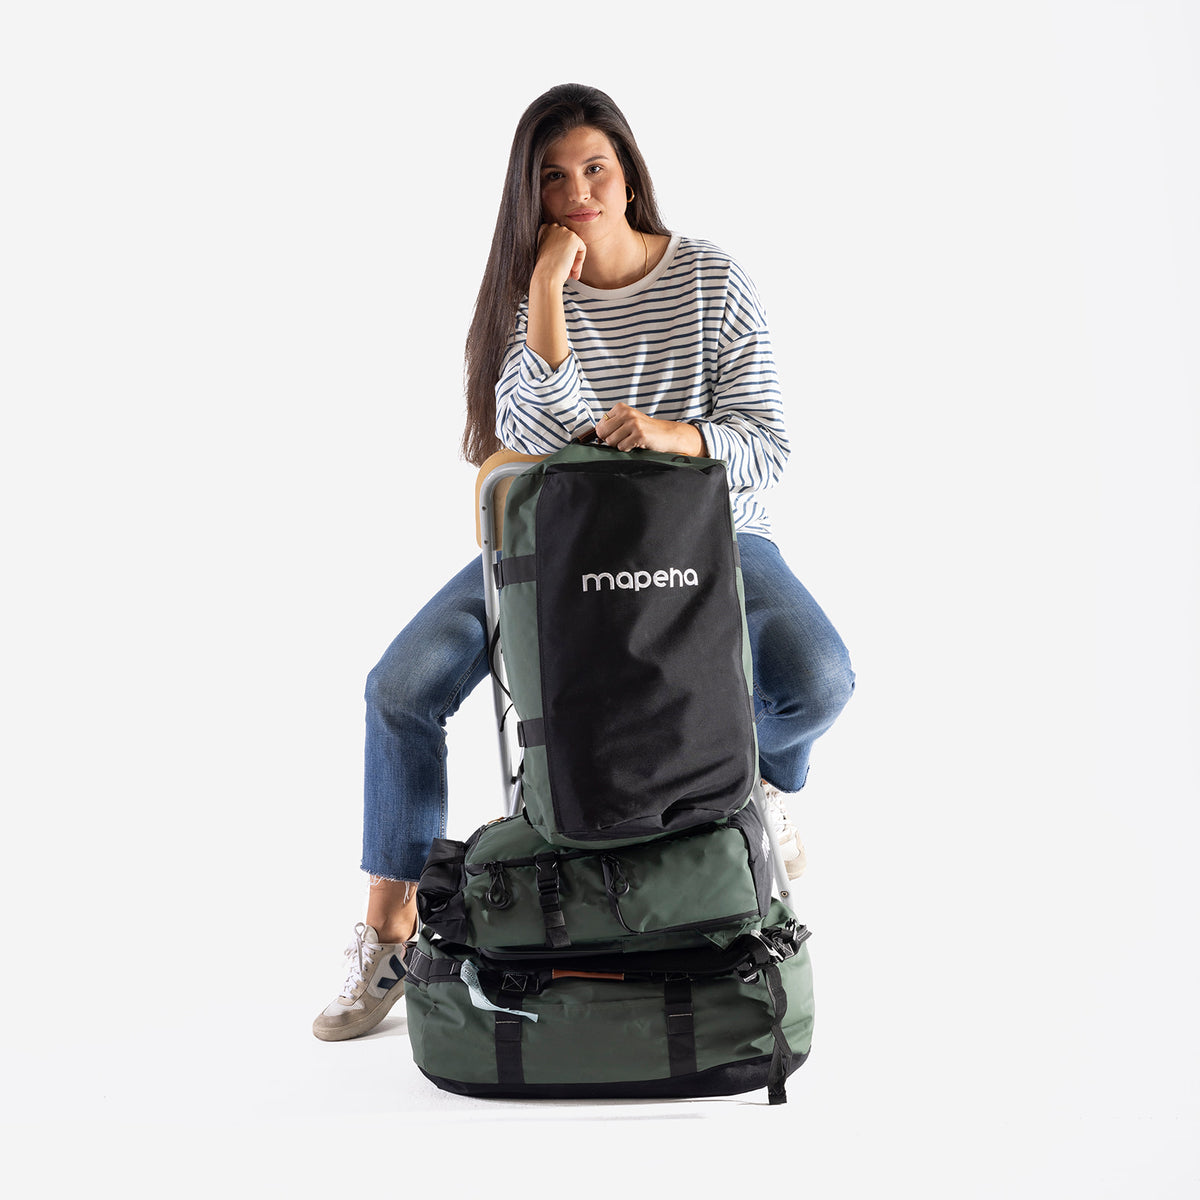 Mapeha - Marca de mochilas, bolsas y complementos de viaje – mapeha